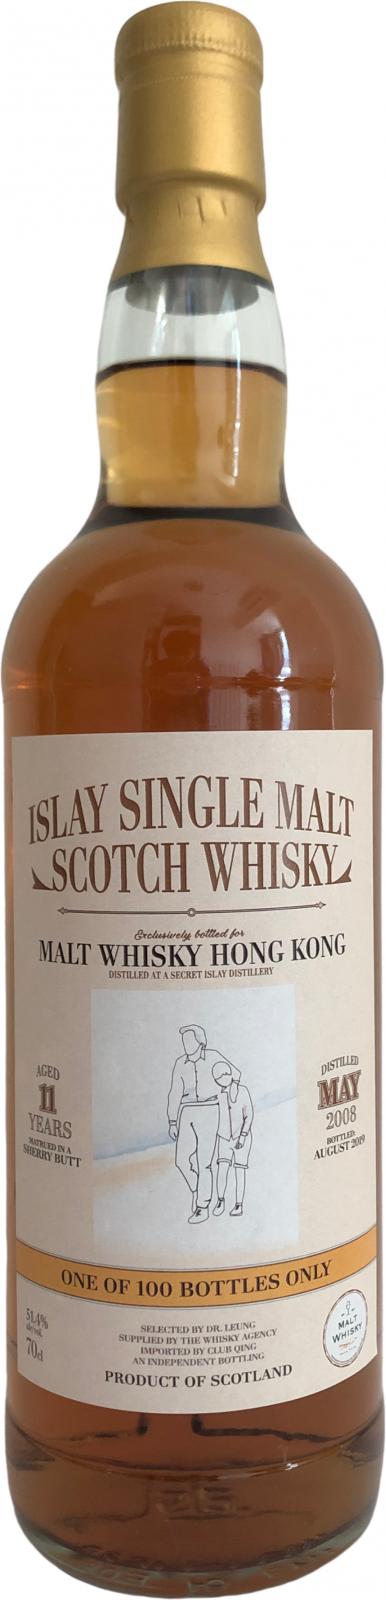 Secret Islay 2008 TWA Sherry Butt Malt Whisky Hong Kong 51.4% 700ml